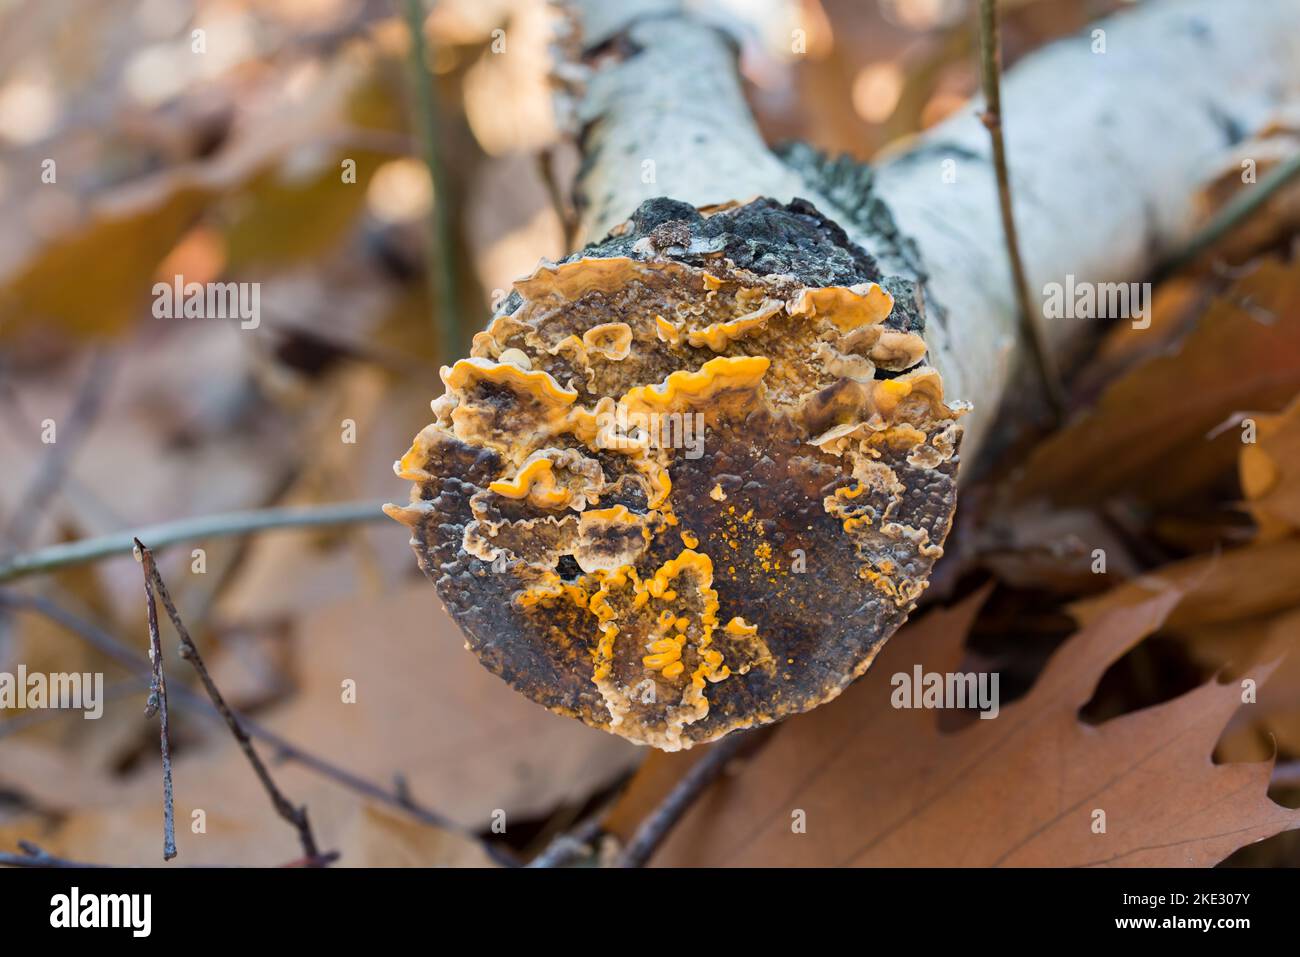 Stereum hirsutum, champignon jaune de la queue de dinde fausse sur le foyer sélectif de la fermeture des arbres Banque D'Images